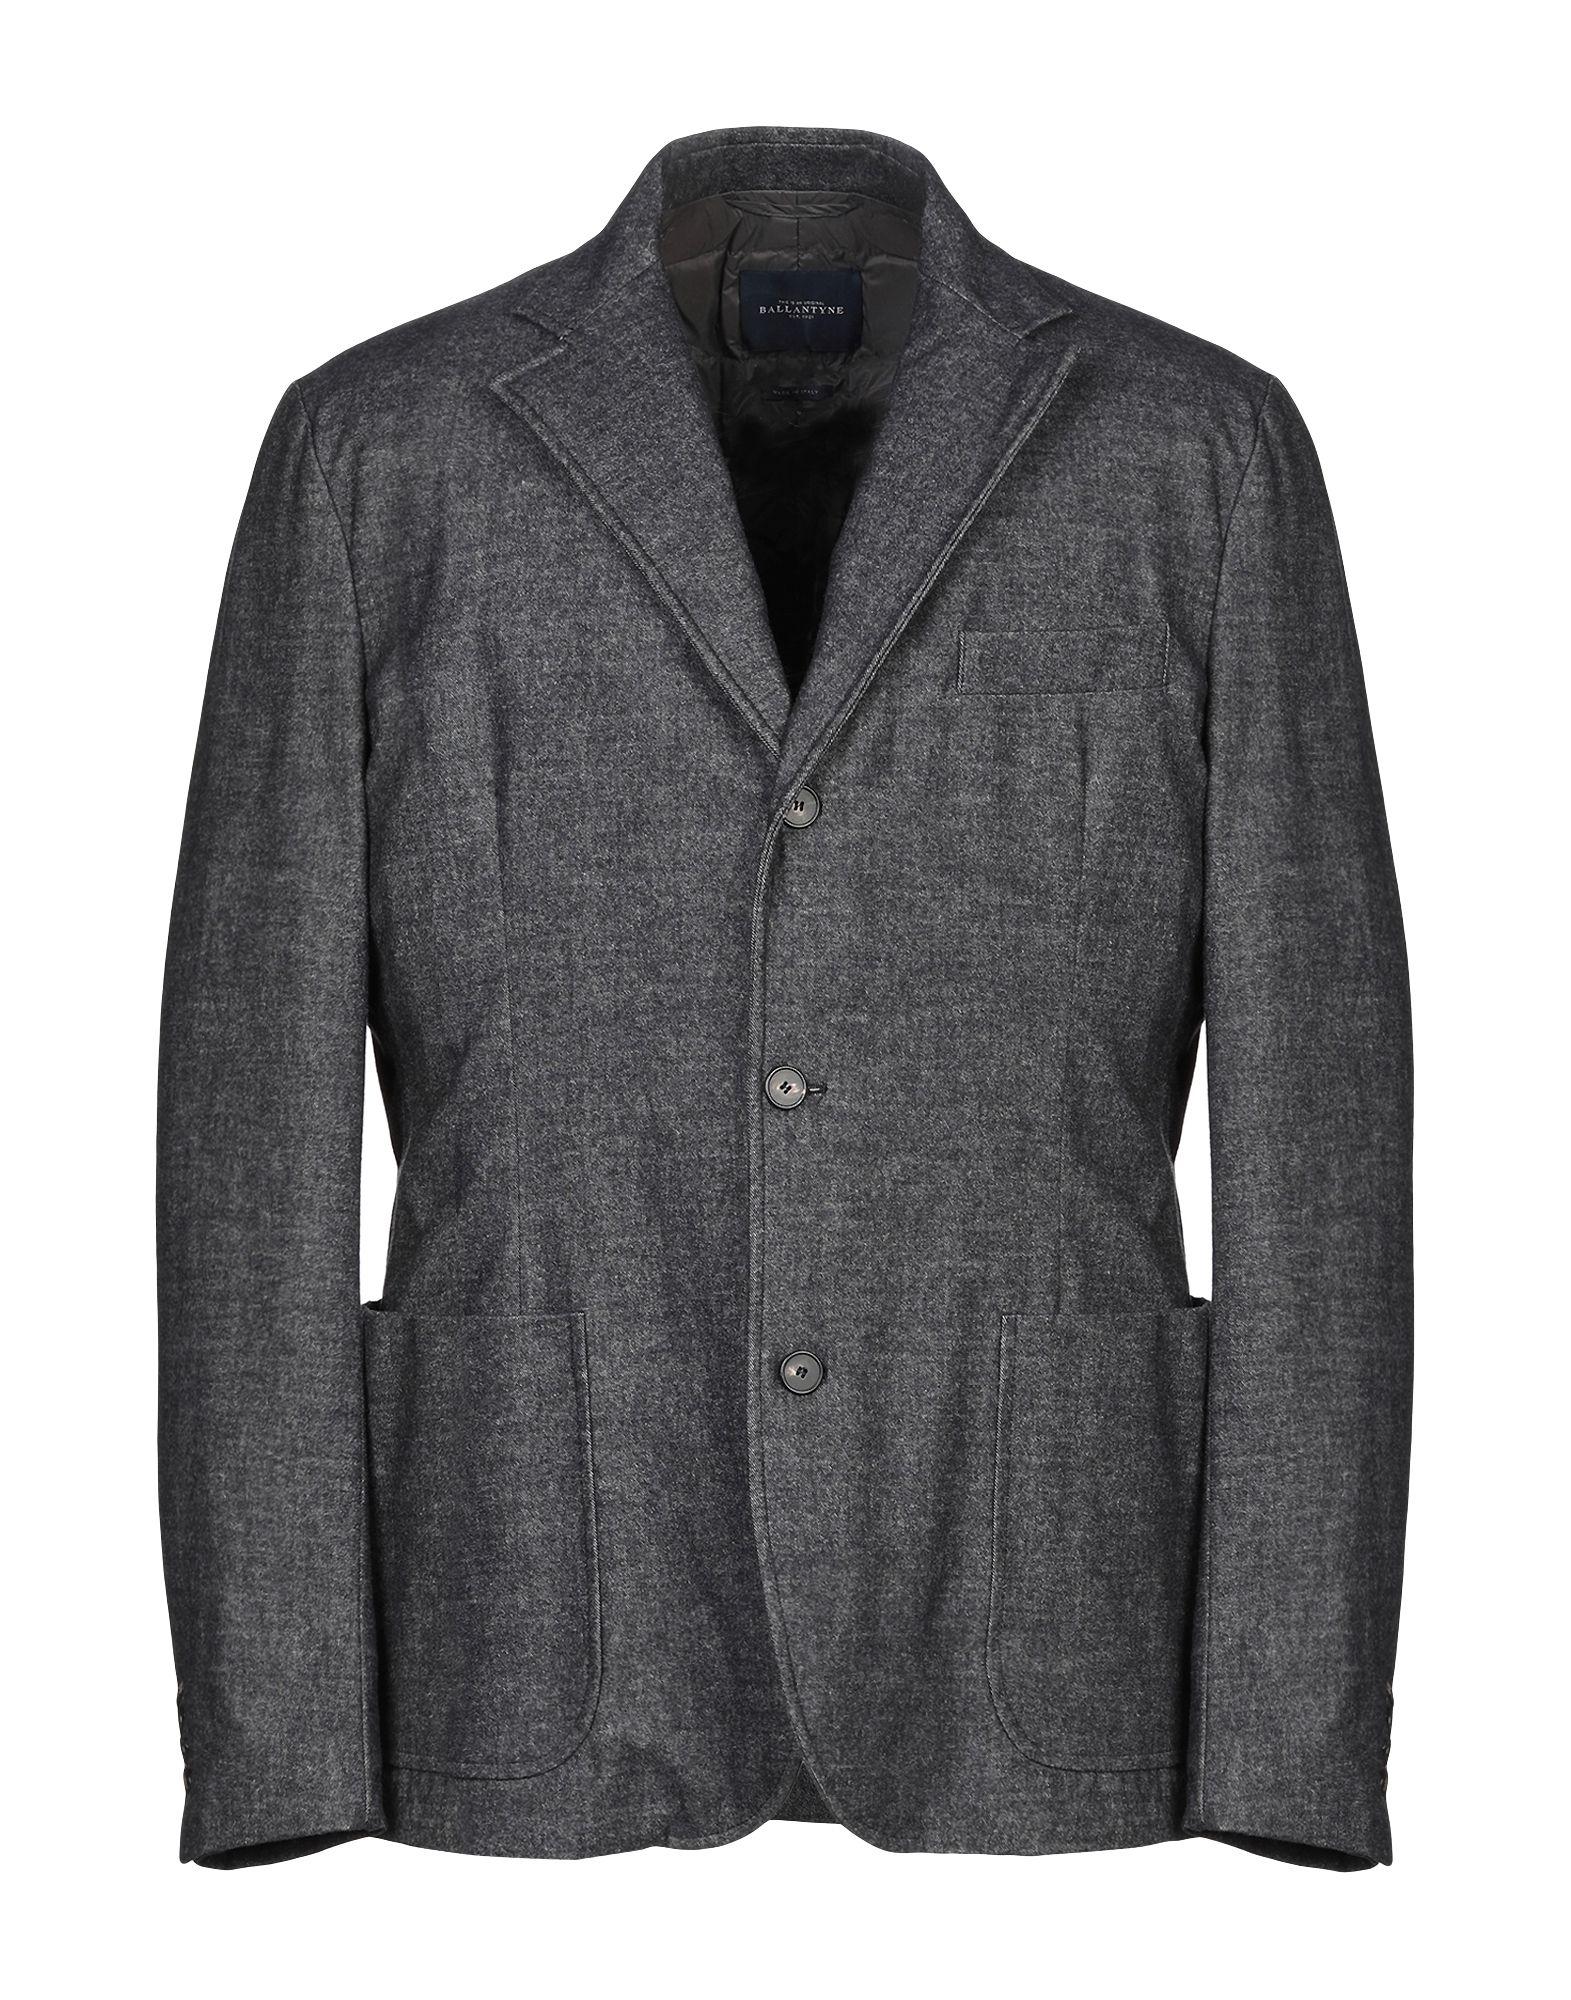 Ballantyne Flannel Blazer in Steel Grey (Gray) for Men - Lyst